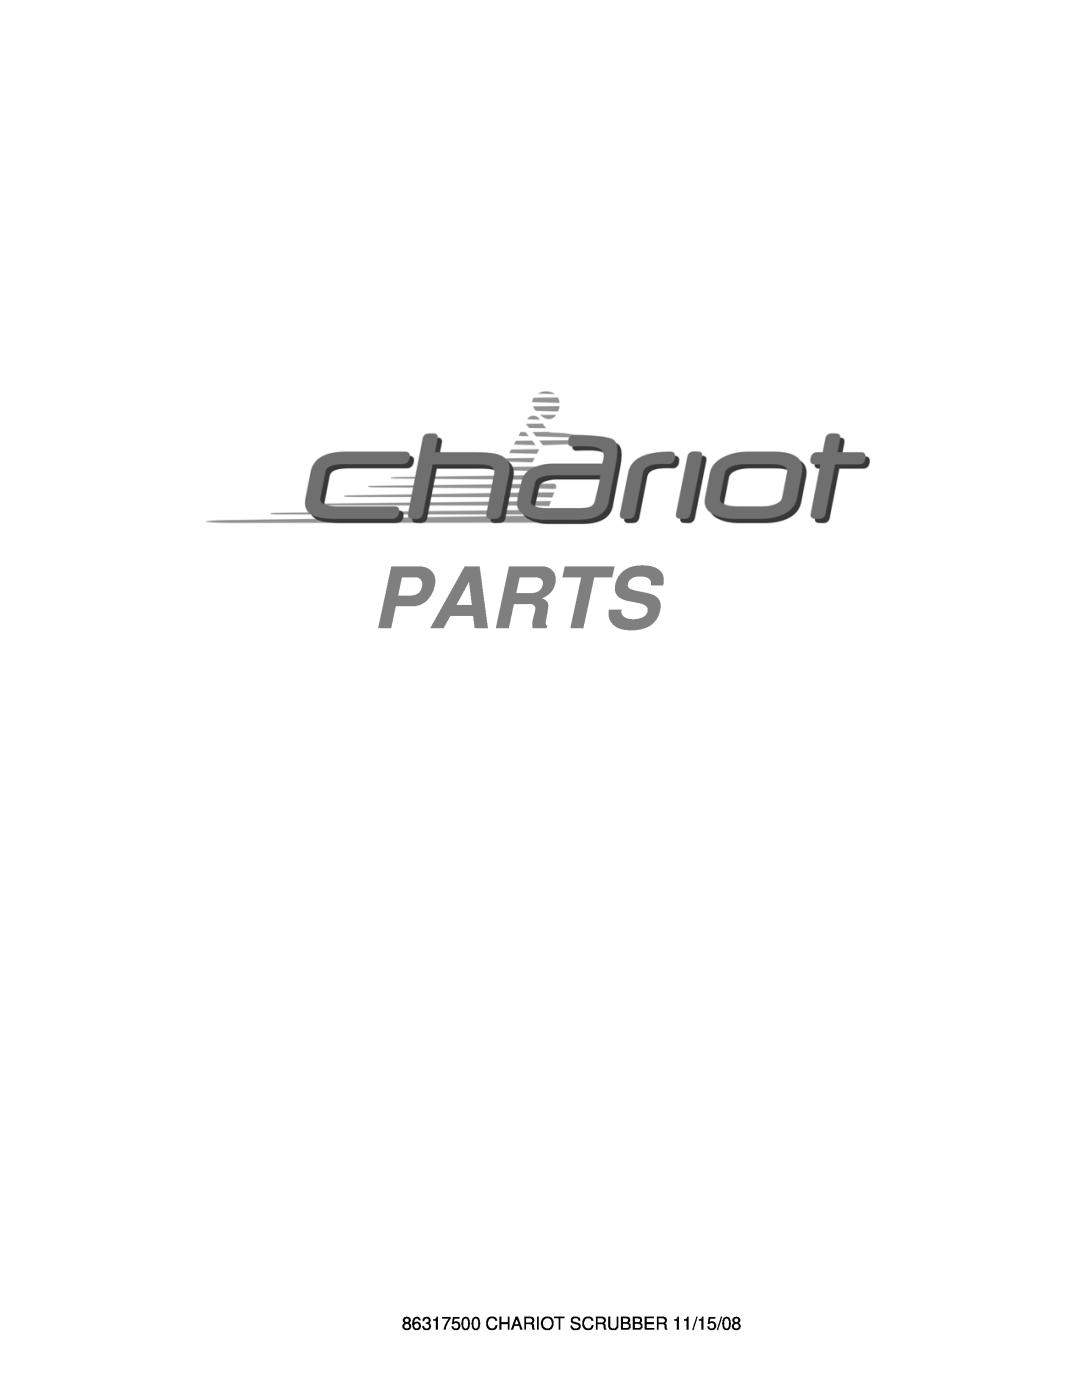 Windsor CSX24, CSX26SP, 10061090, 10061160 manual Parts, CHARIOT SCRUBBER 11/15/08 